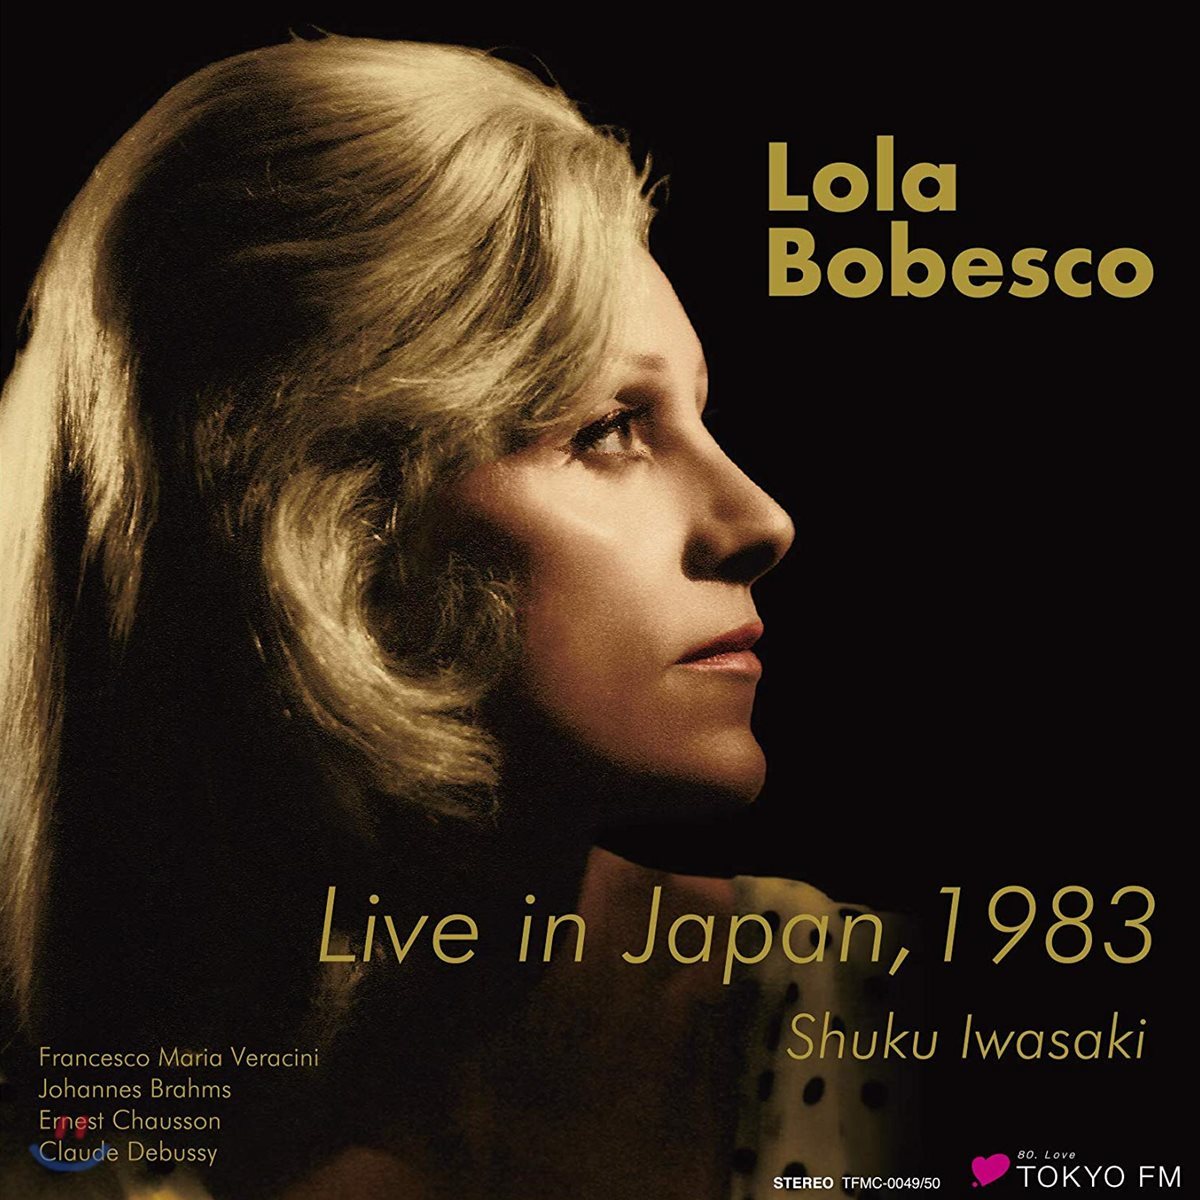 롤라 보베스코 1983년 동경 라이브 (Lola Bobesco Live in Japan, 1983)